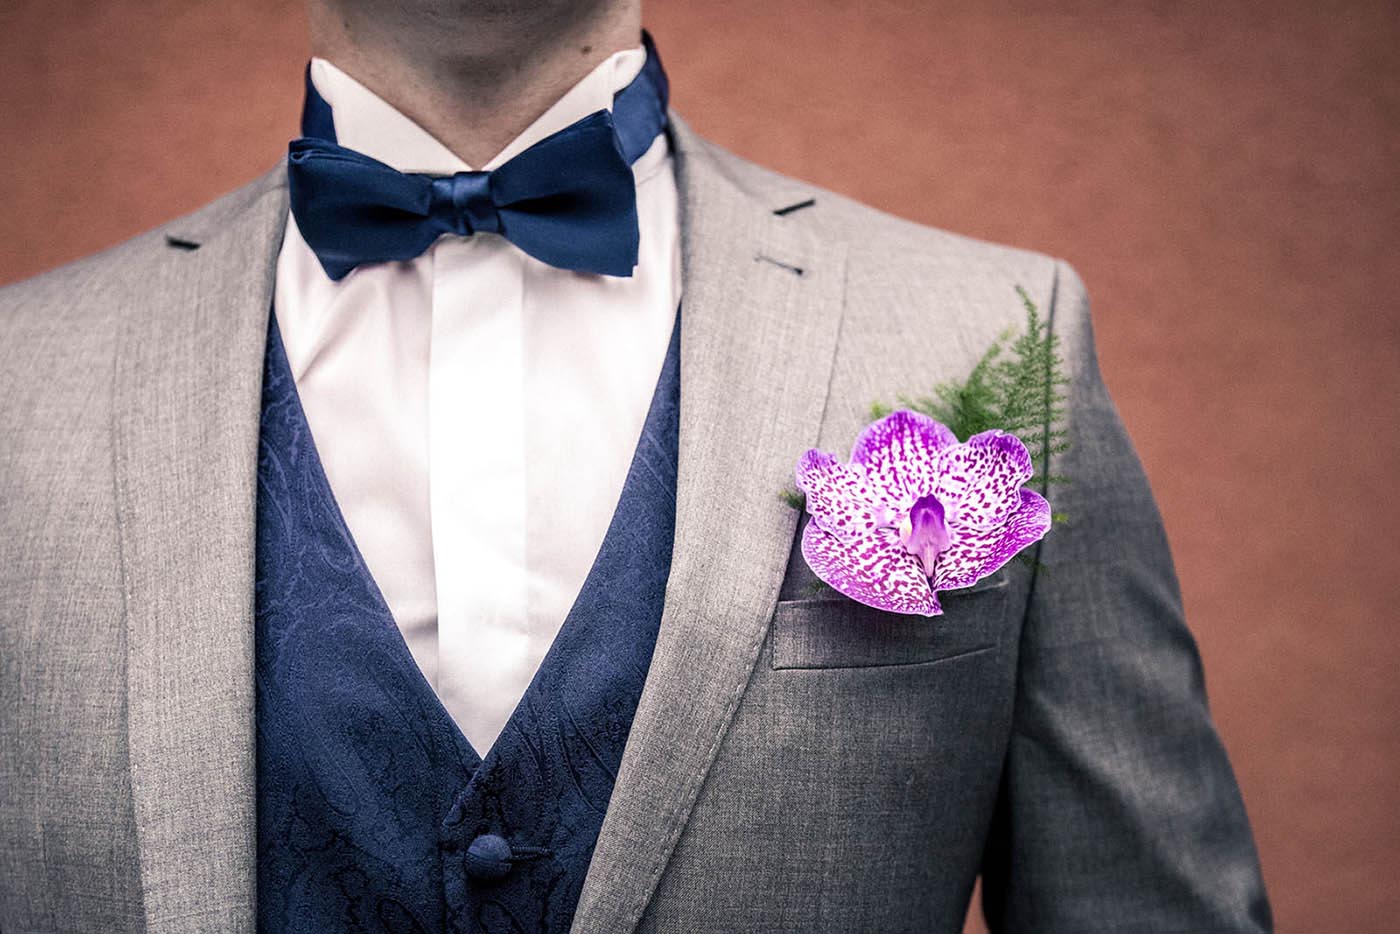 Le détail de la boutonnière du marié : une magnifique orchidée fushia